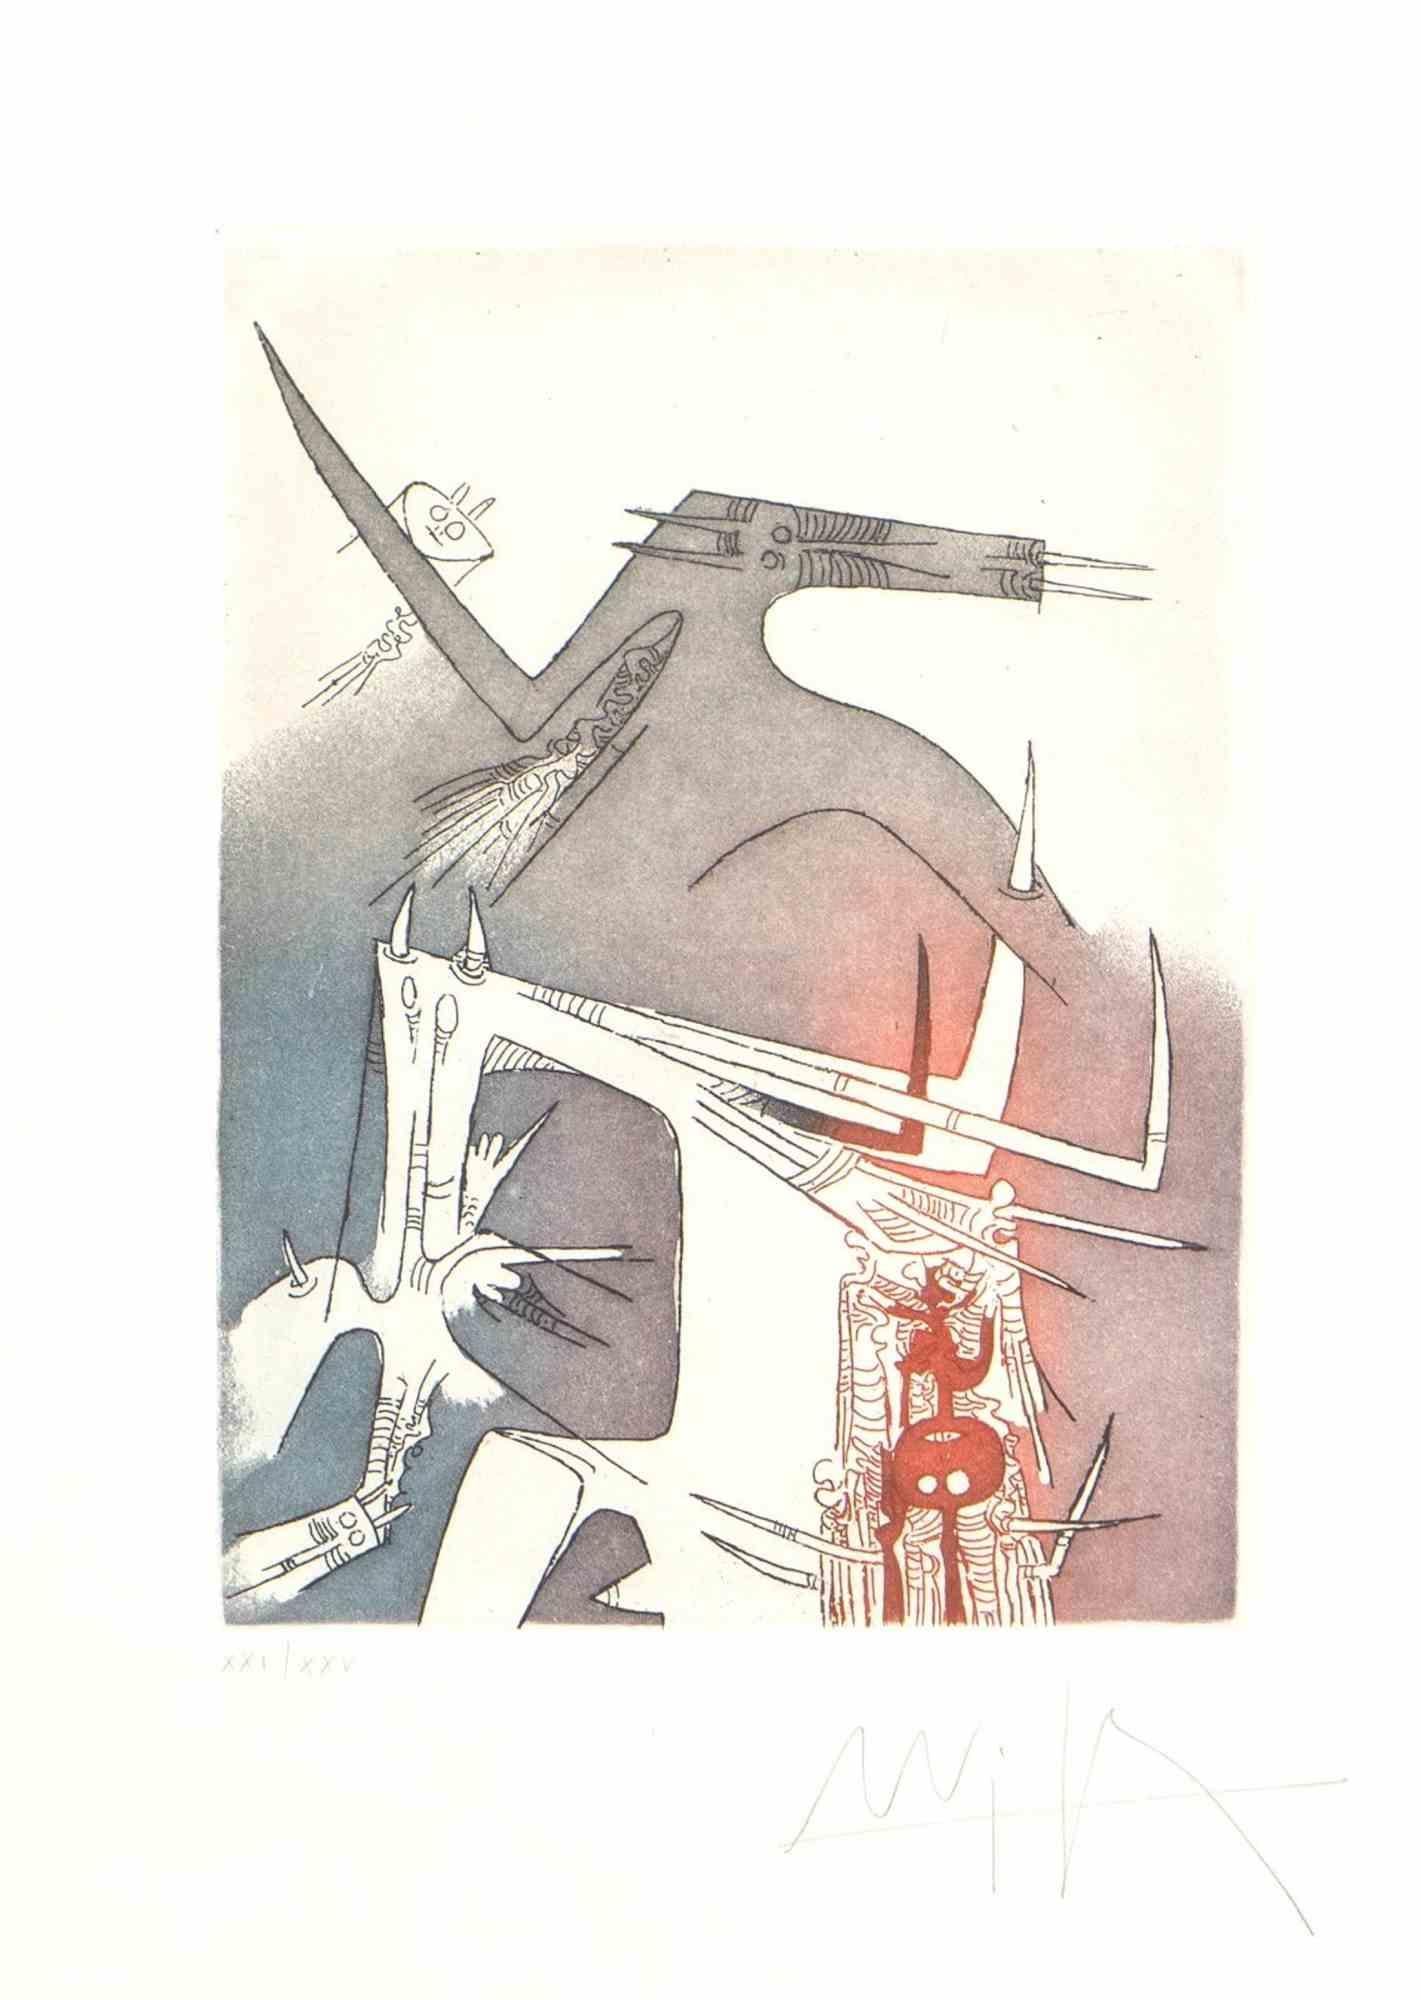 Personages est une estampe réalisée par Wifredo Lam (Sagua La Grande 1902 - Paris 1982). 

Gravure en couleur sur papier.

Signé et numéroté à la main, édition de XXI/XXV en bas au crayon.